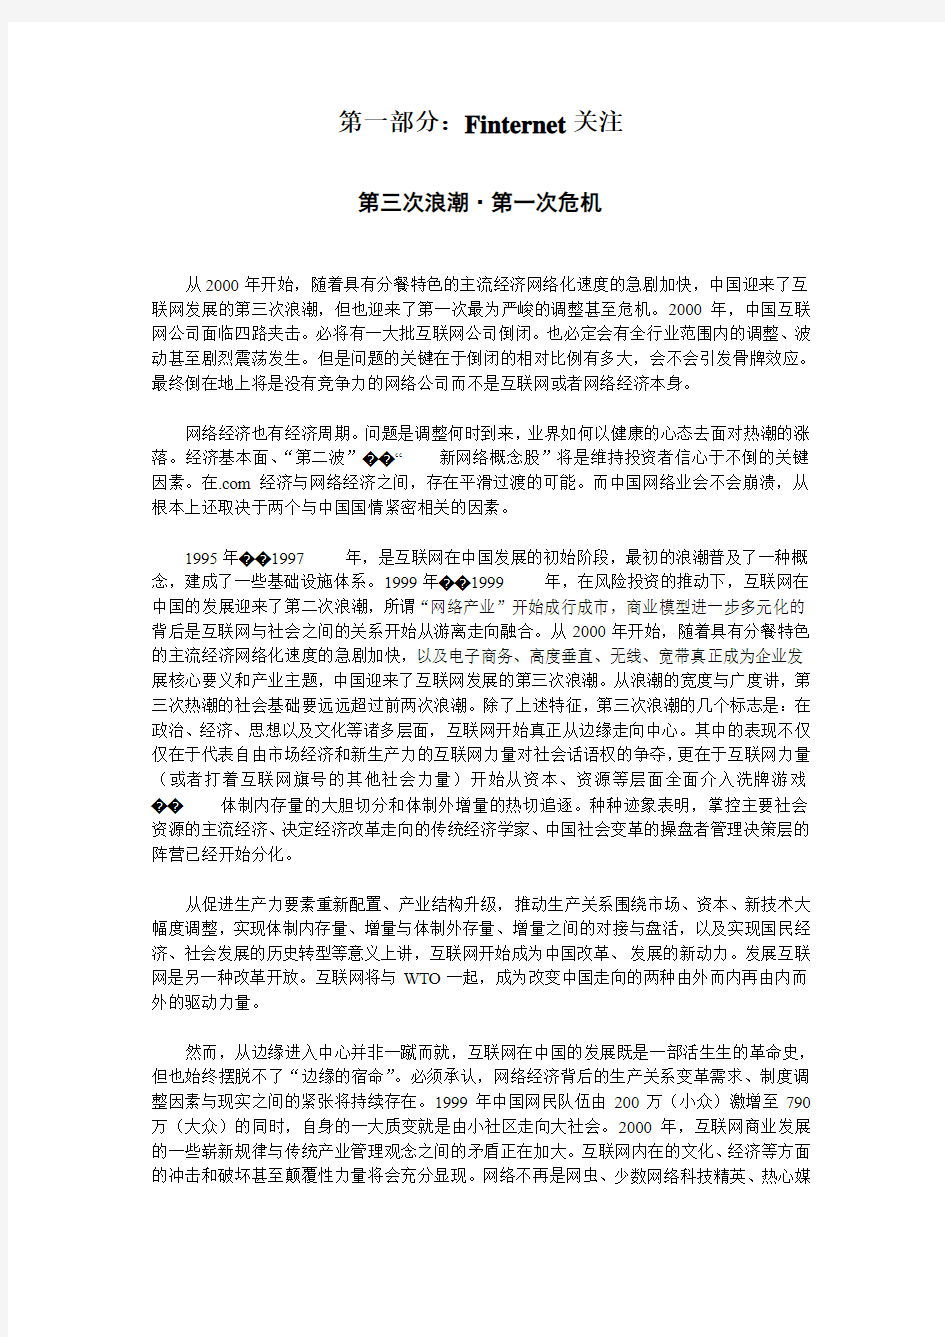 (新)2000年中国网络经济发展生态报告